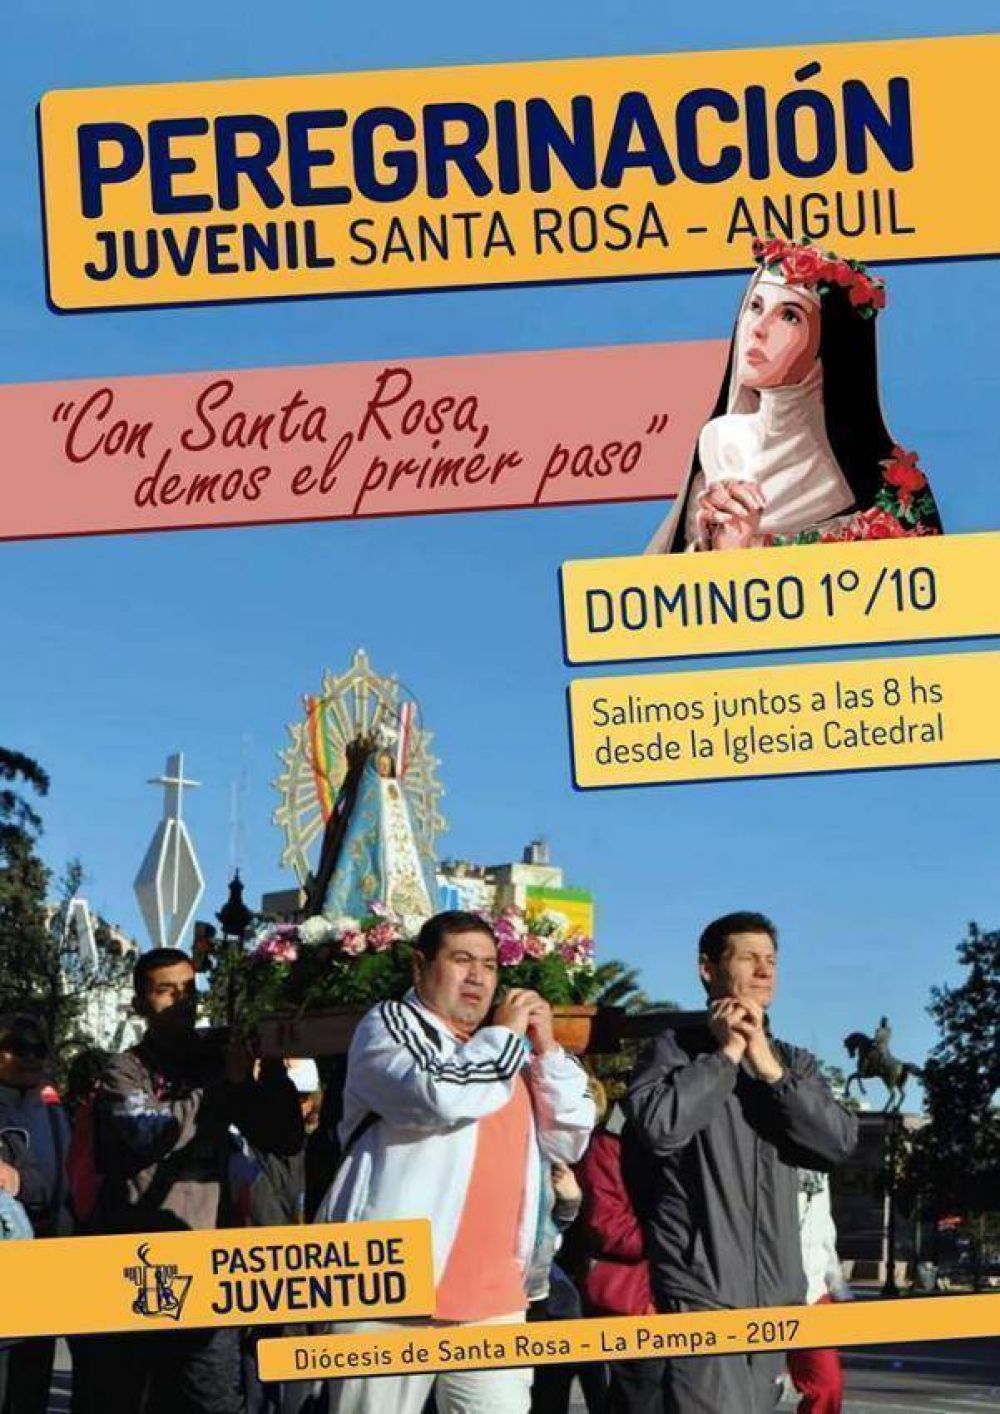 Los fieles de Santa Rosa peregrinan a Anguil